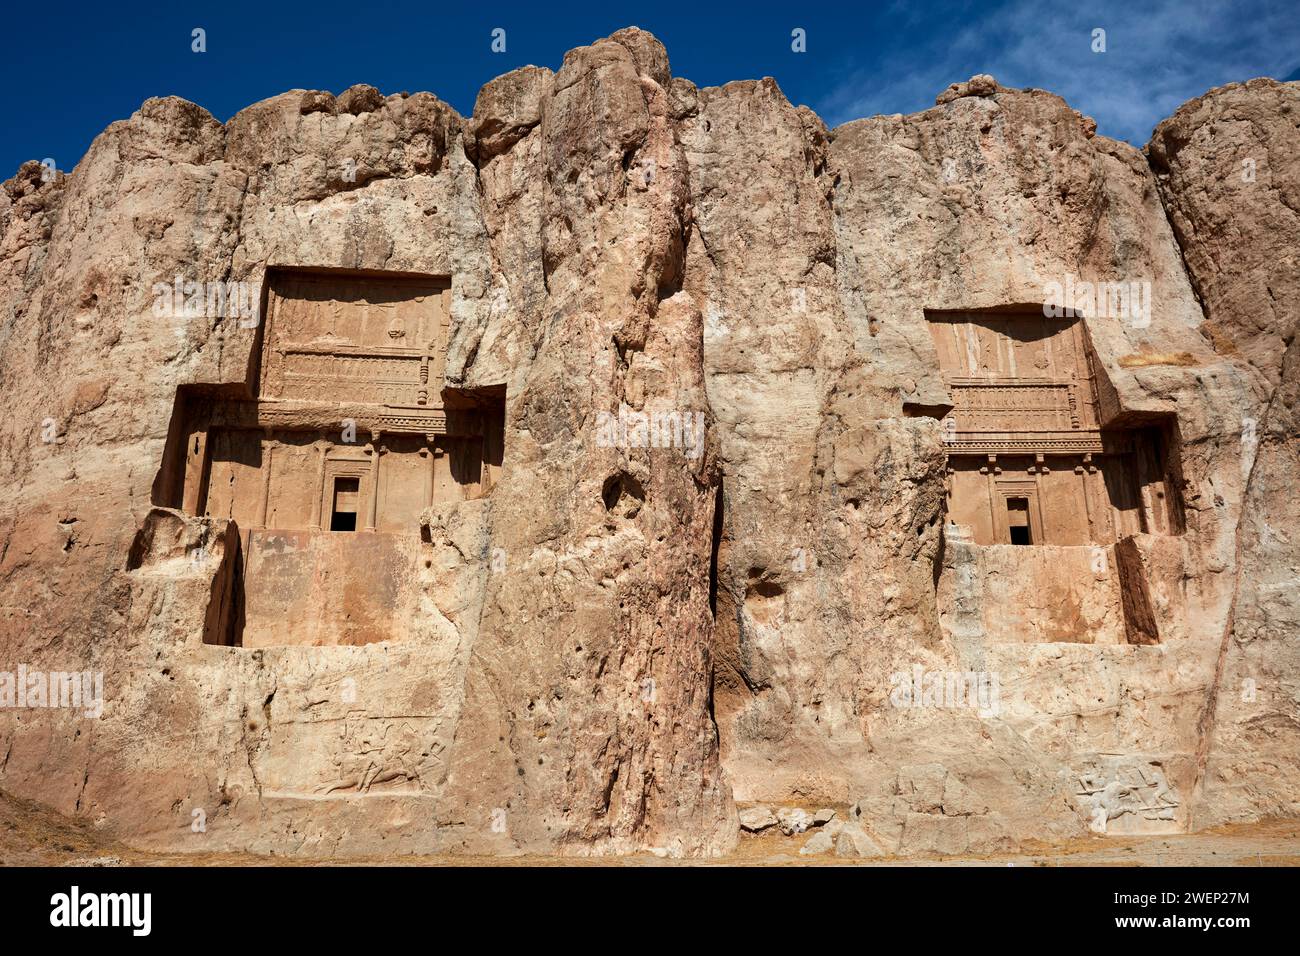 In Felsen gehauene Gräber zweier achäenischer Könige des Persischen Reiches - Artaxerxes I. (rechts) und Darius II. (Links). Naqsh-e Rostam Necropolis in der Nähe von Persepolis, Iran Stockfoto